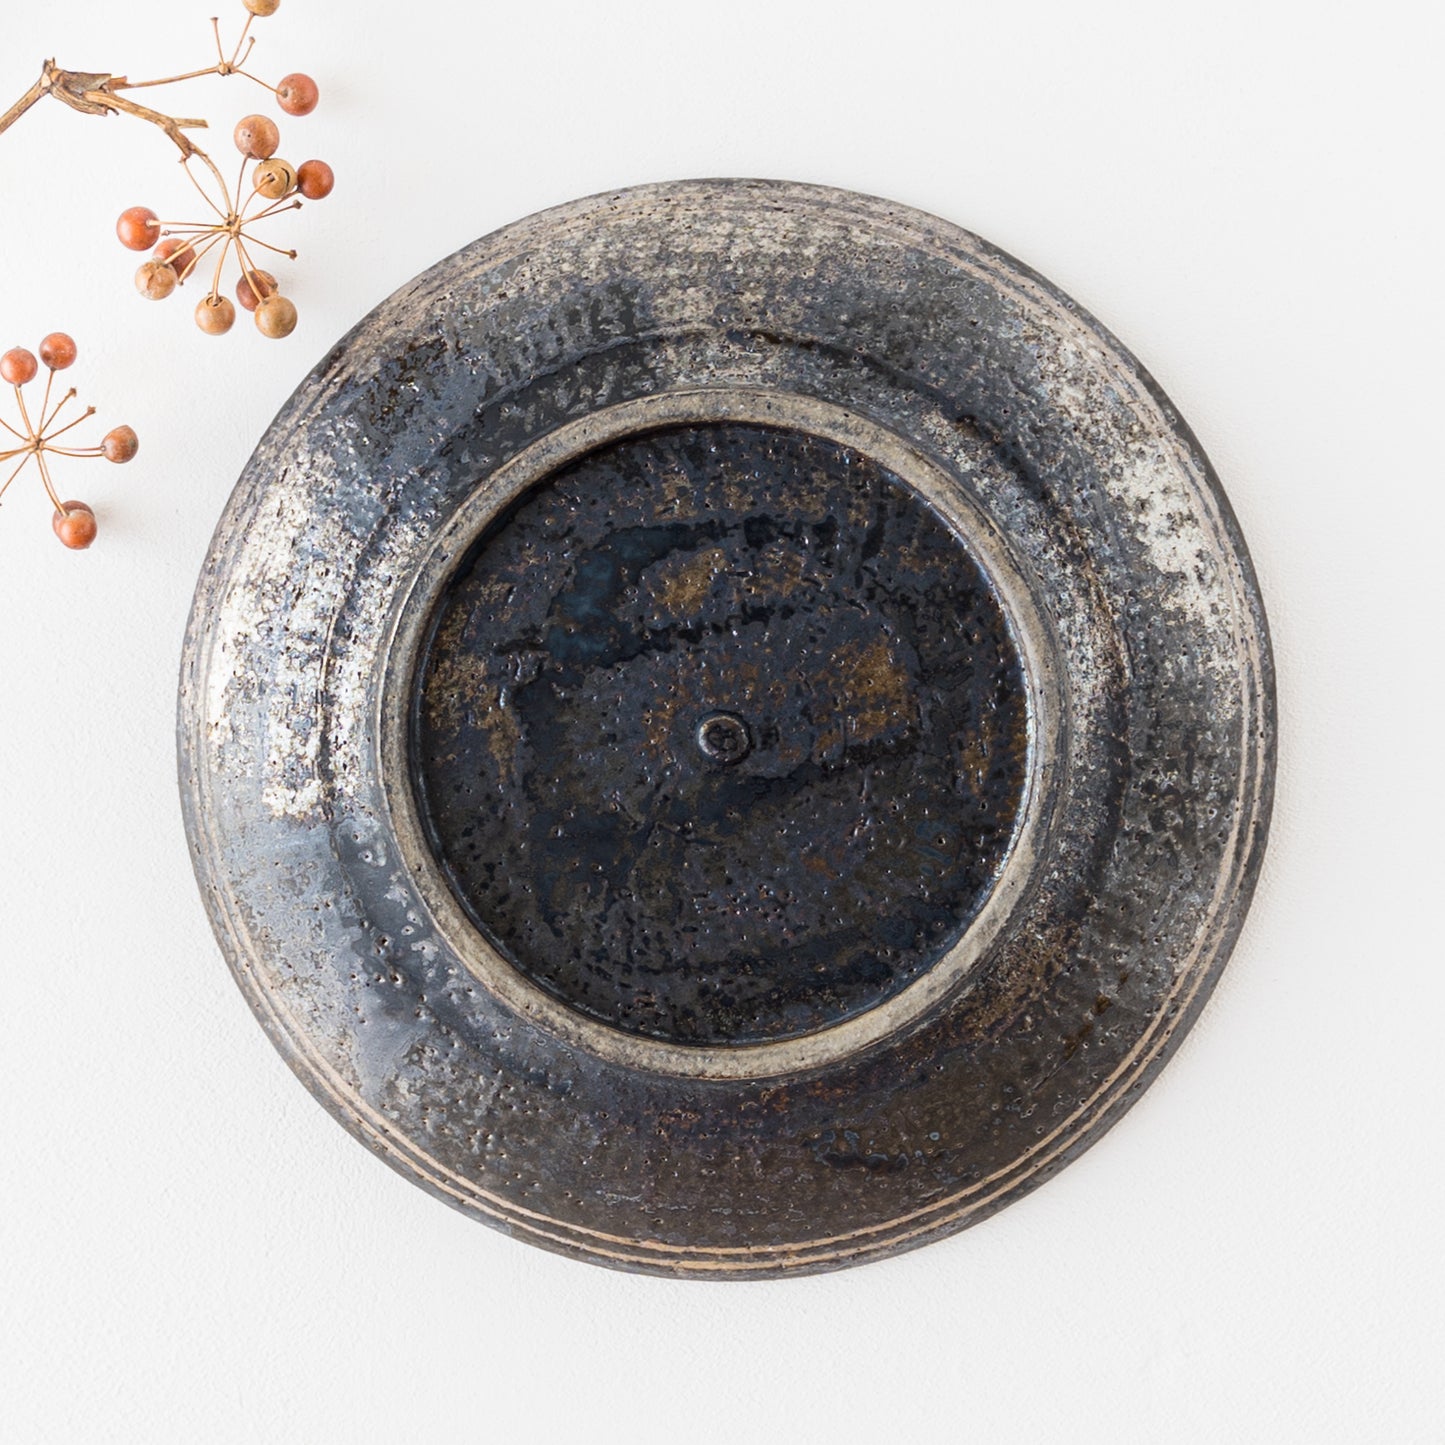 独特な黒釉に魅せられる渡辺信史さんのロウ抜き7寸皿